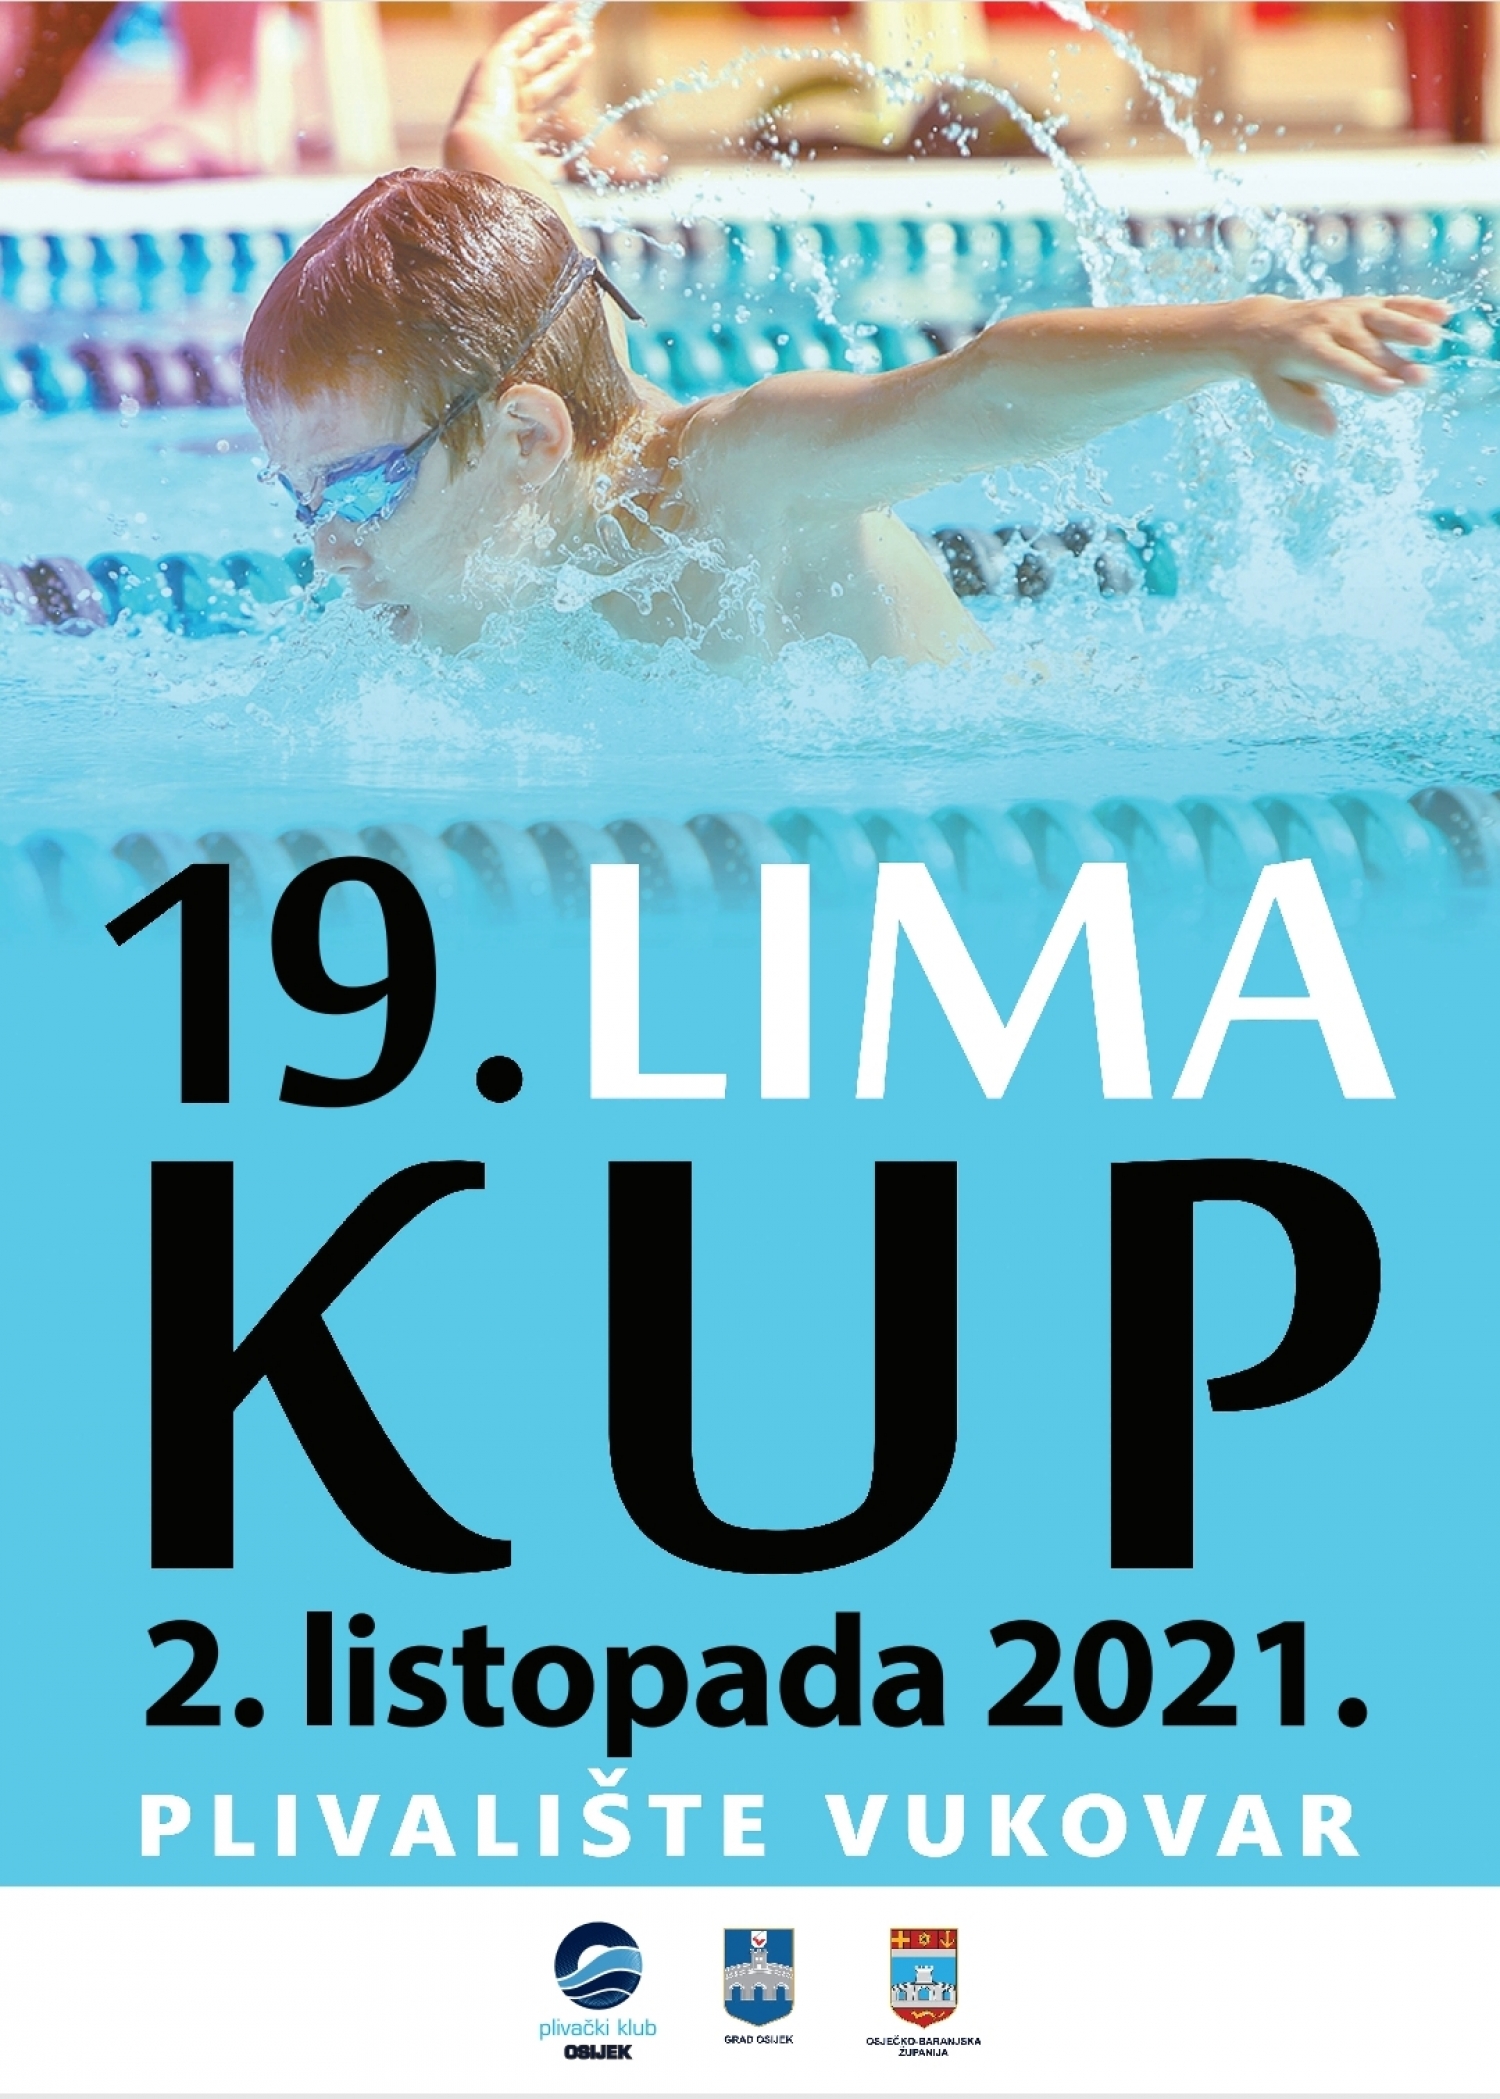 Prijave za 19. Lima kup, Vukovar 2.10.2021.